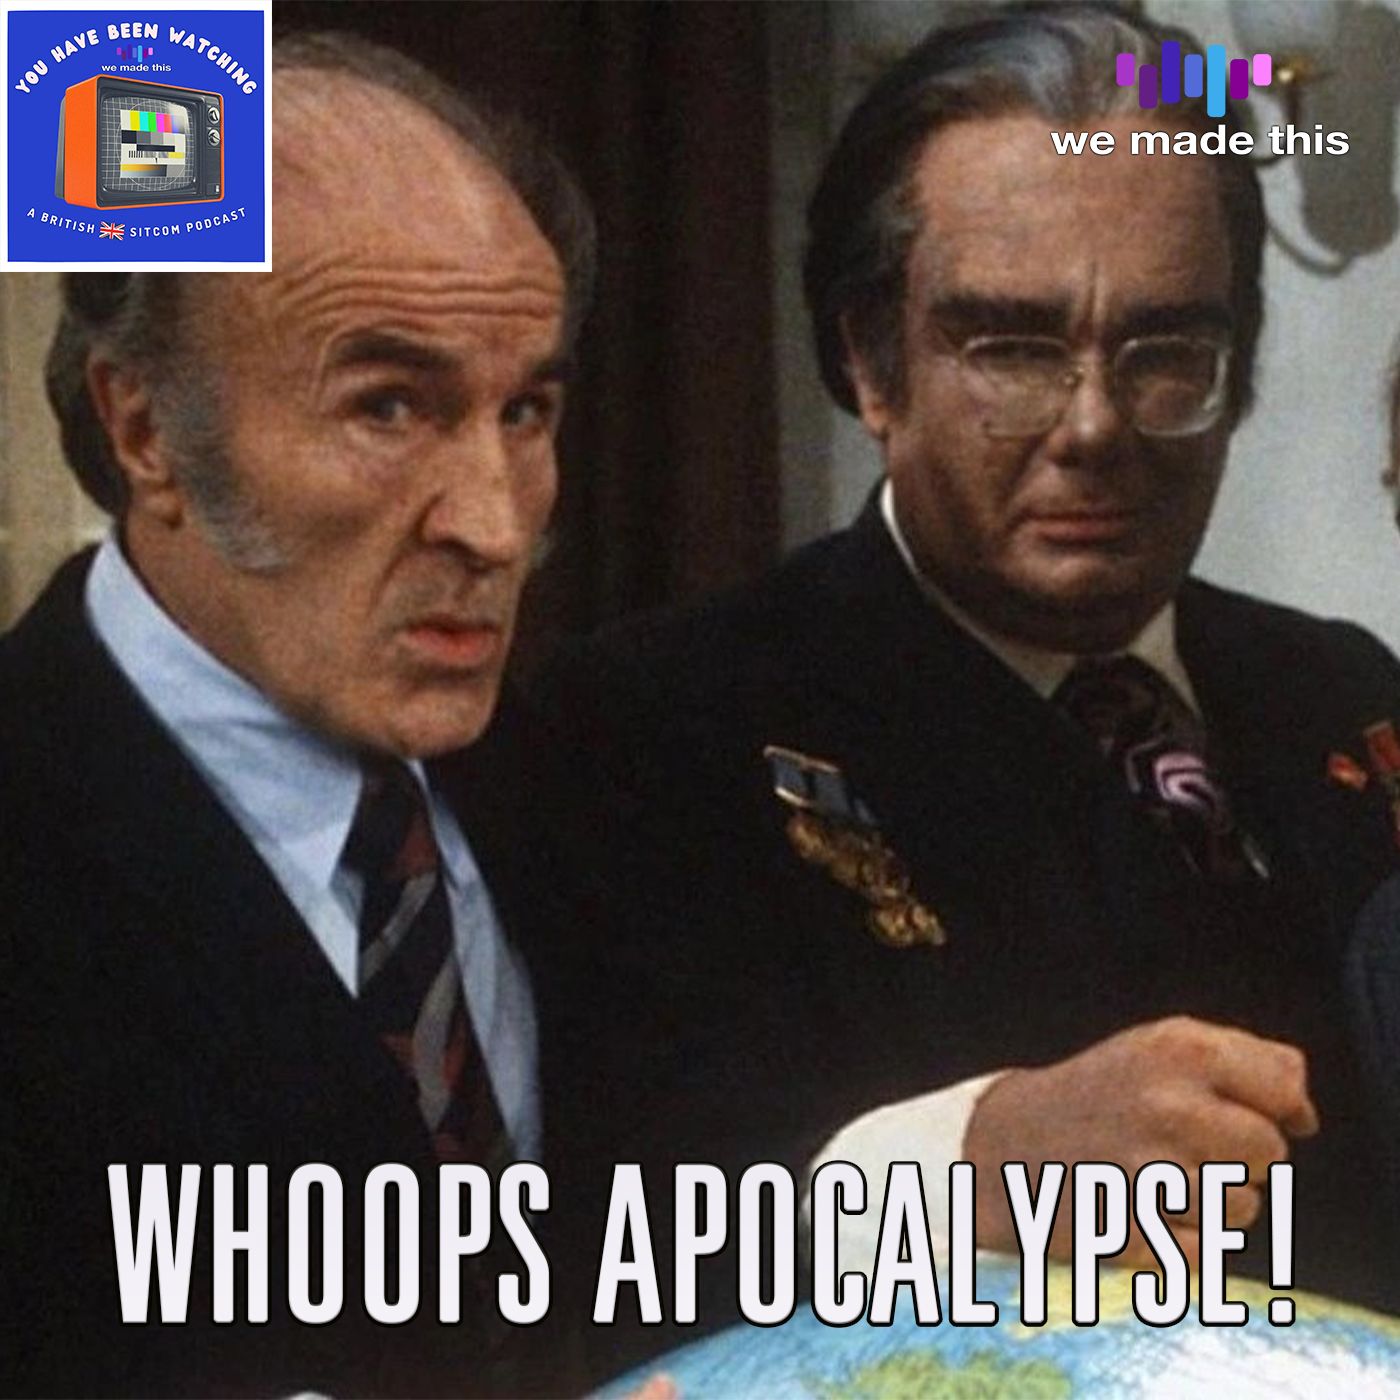 16. Whoops Apocalypse! (1982)